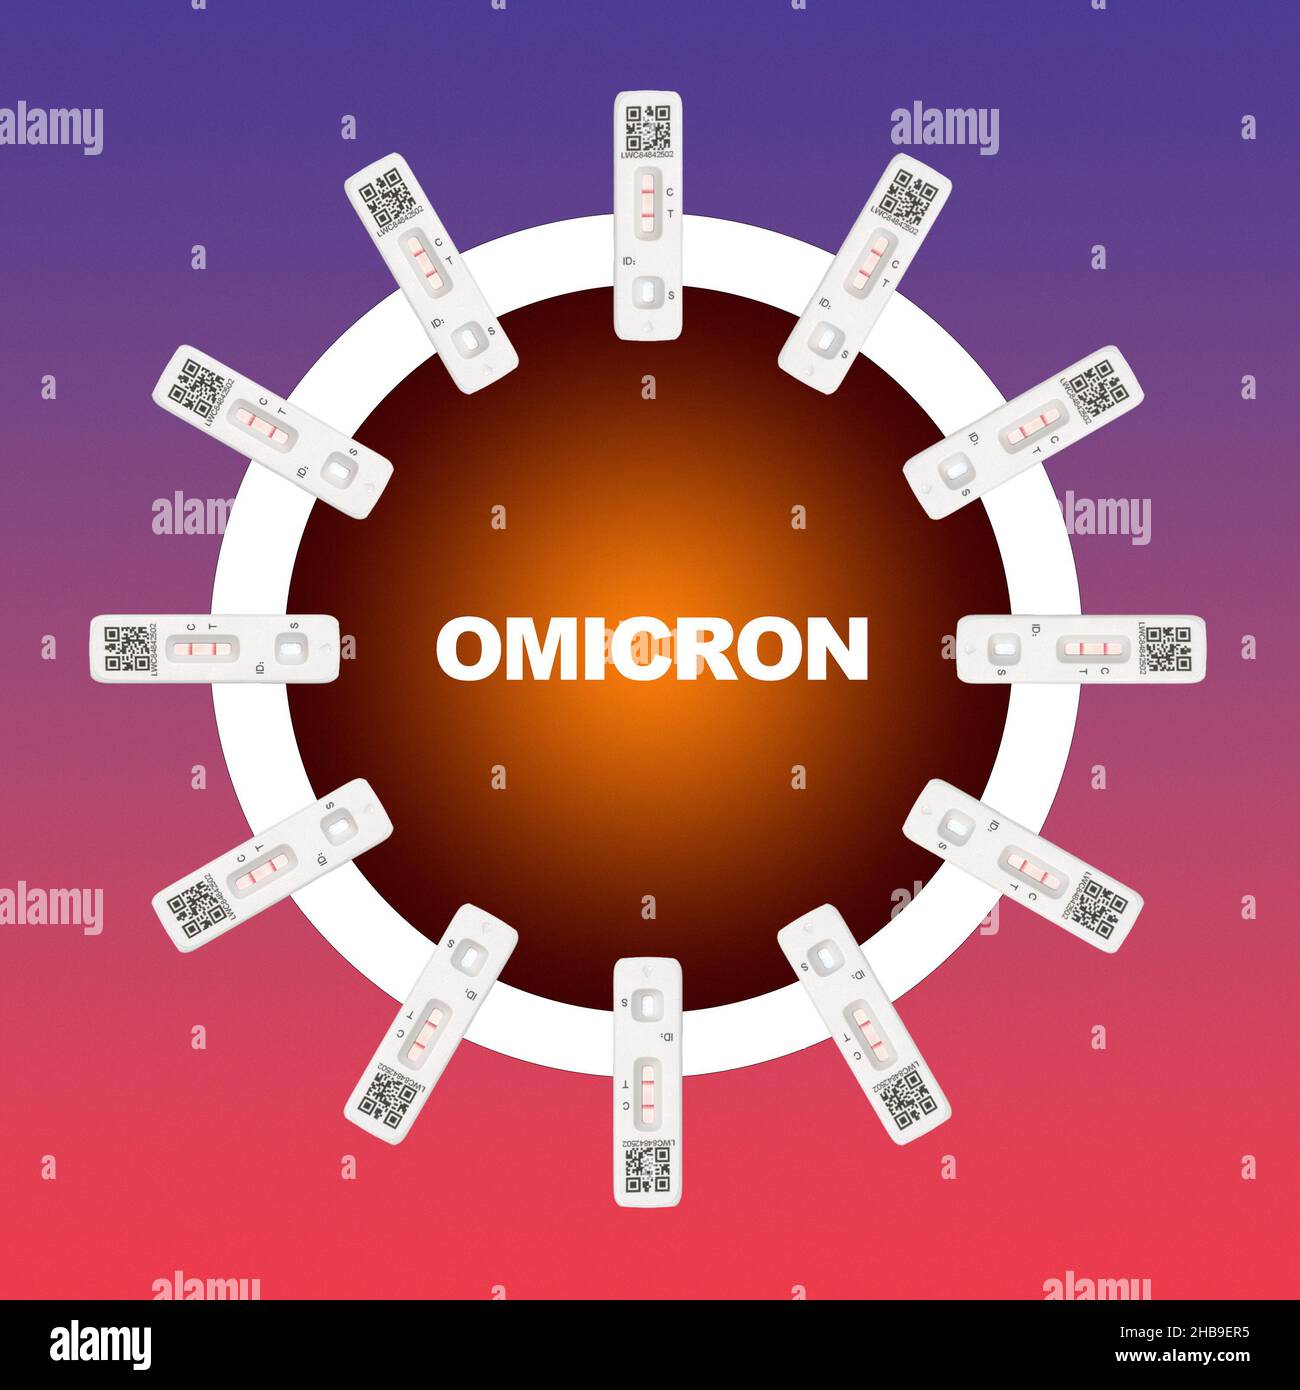 Particule du virus du coronavirus OMICRON Covid-19 - image conceptuelle réalisée avec un cercle de pointes de protéines de bande de test à flux latéral positif autour d'une sphère Banque D'Images